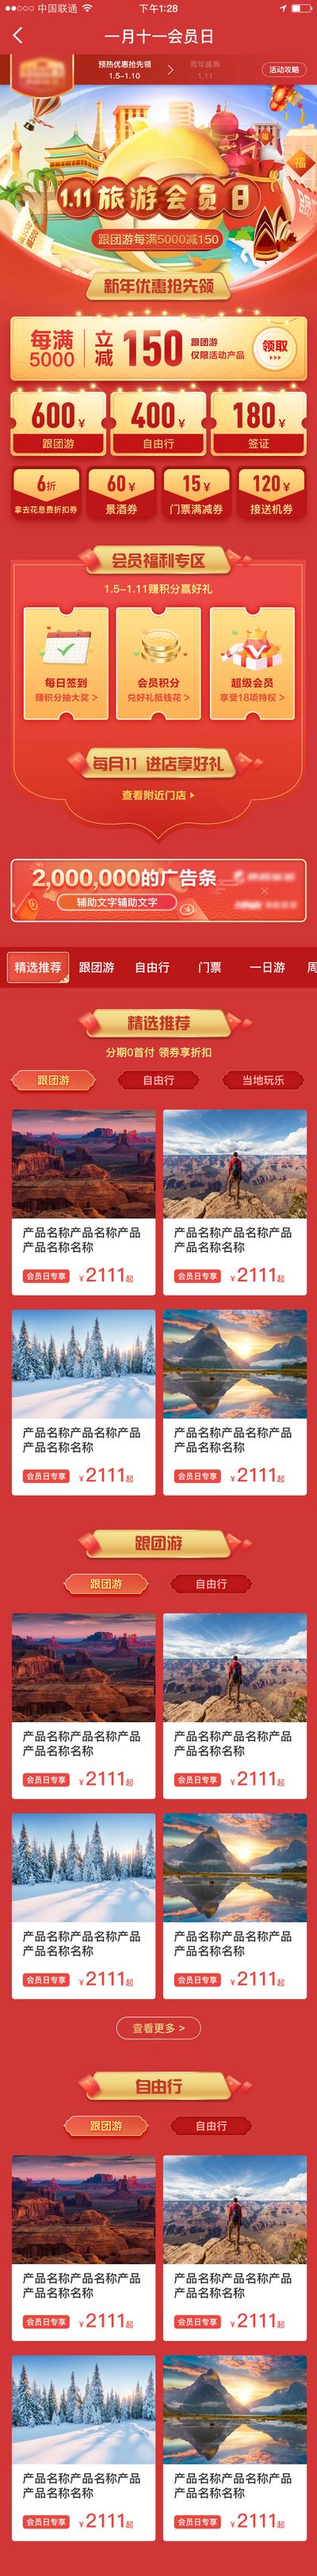 南门网 H5 专题设计 中国传统节日 活动 旅游 新年 会员日 红金